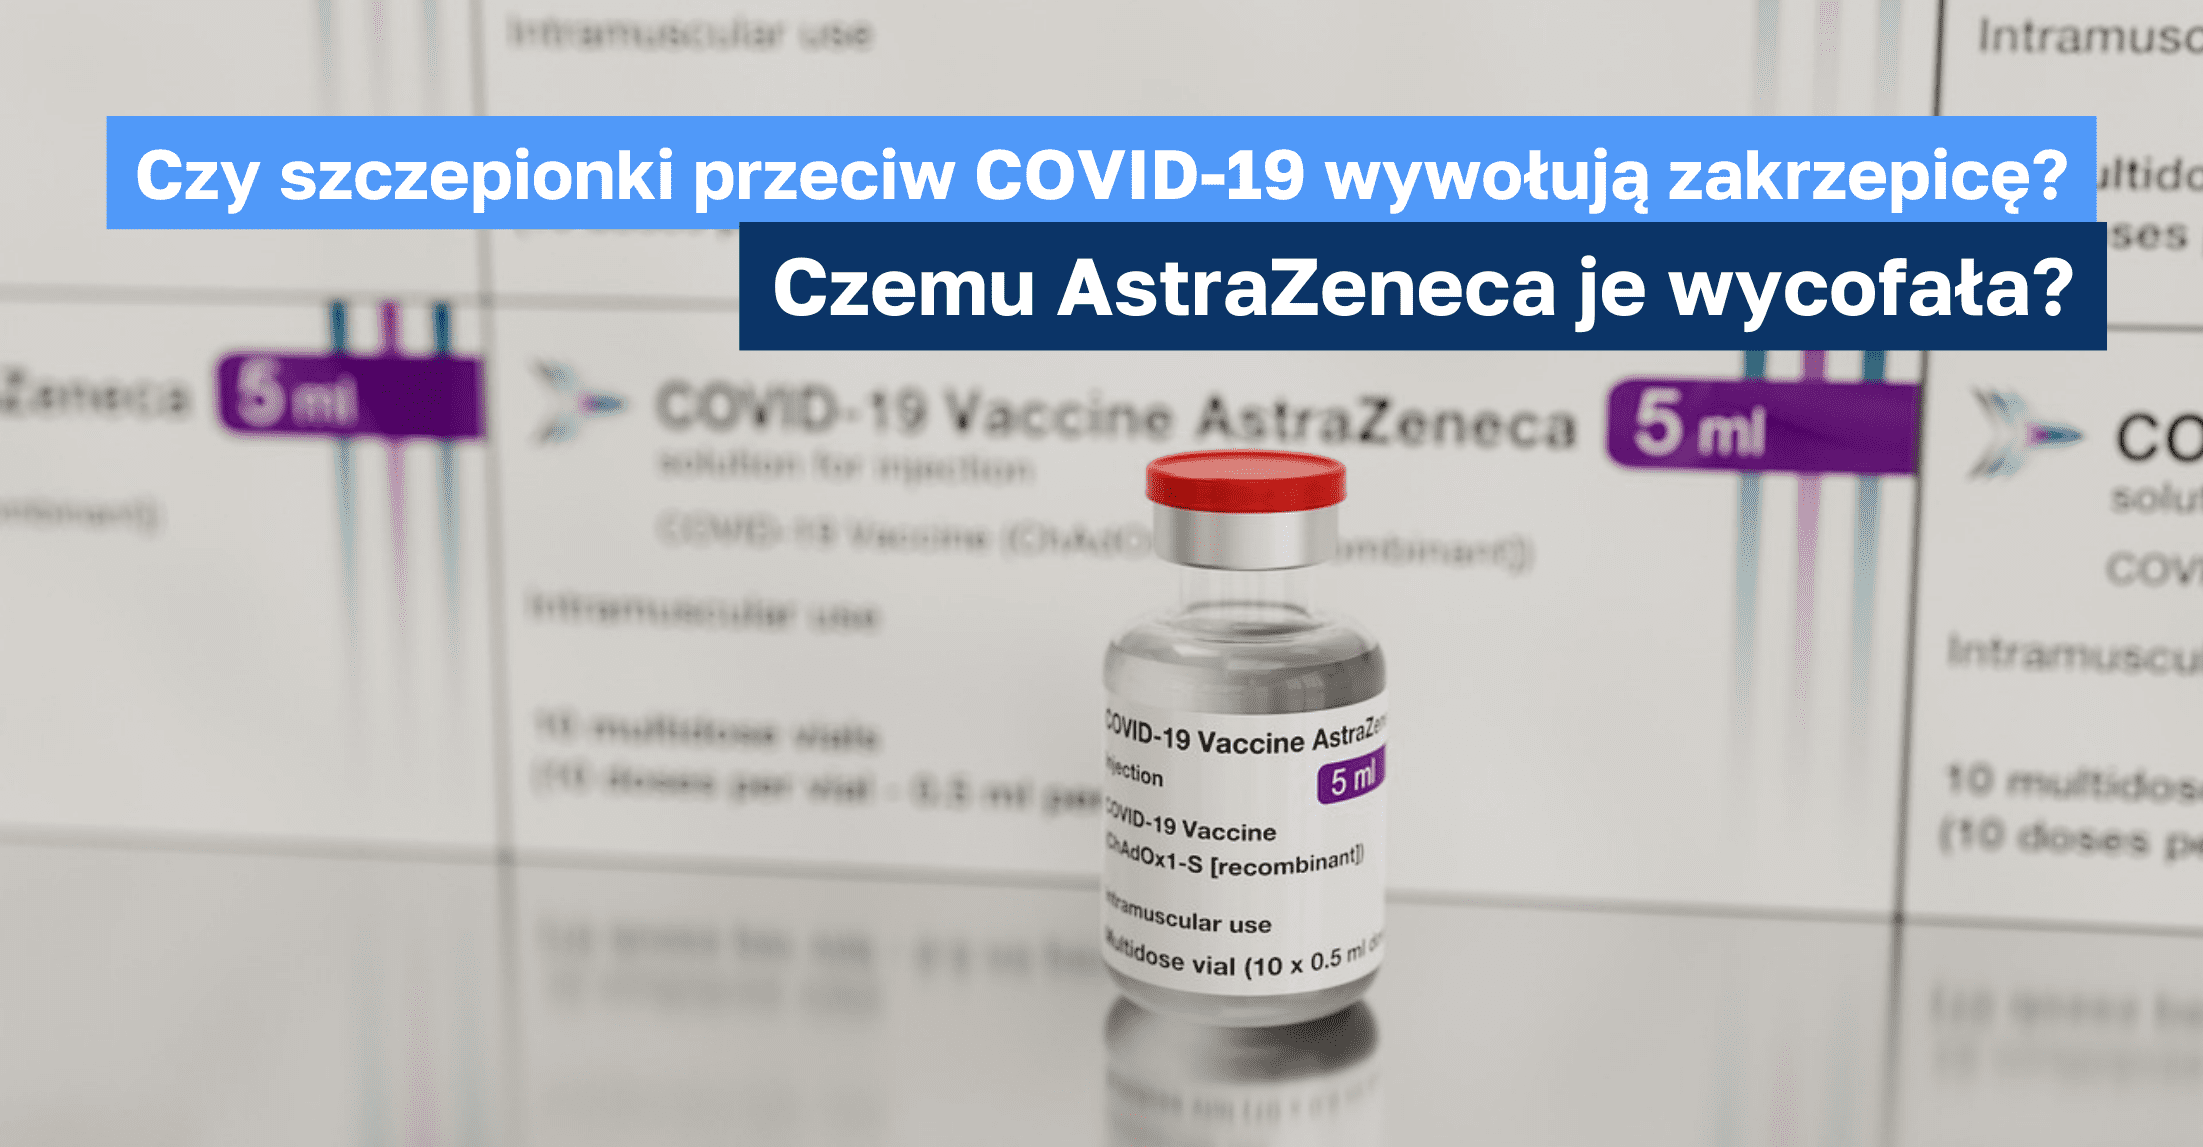 Czy szczepionki przeciw COVID-19 wywołują zakrzepicę? Czemu AstraZeneca je wycofała?